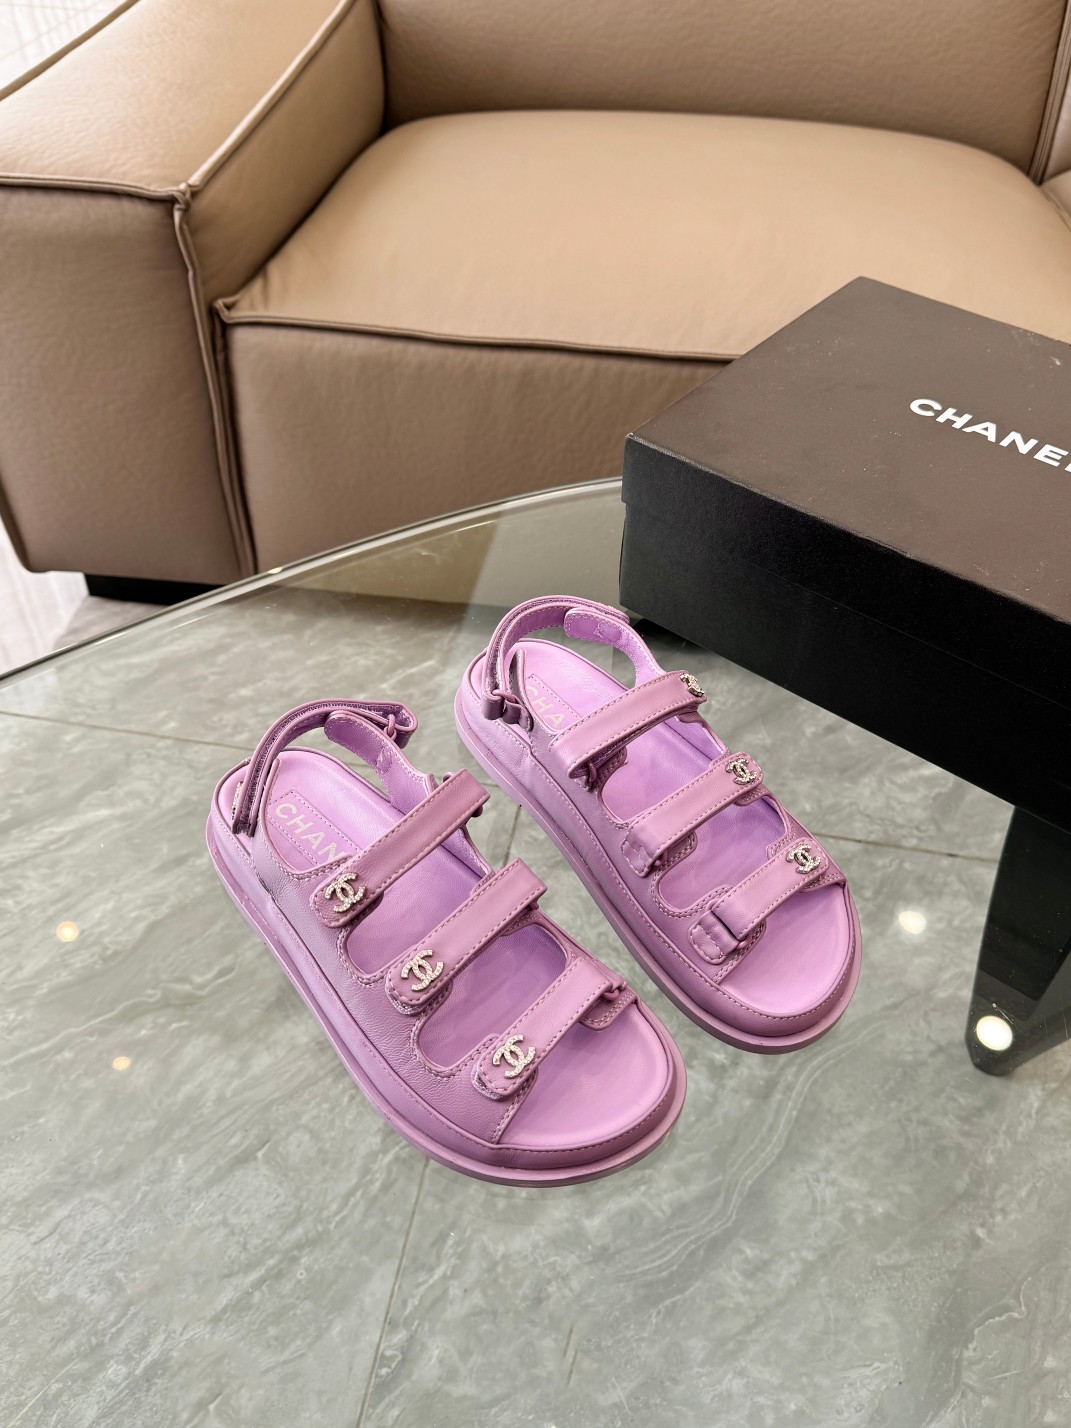 Compre la mejor réplica de alta calidad
 Chanel Zapatos Pantuflas Hardware oro Dermis Piel oveja Colección primavera – verano Playa